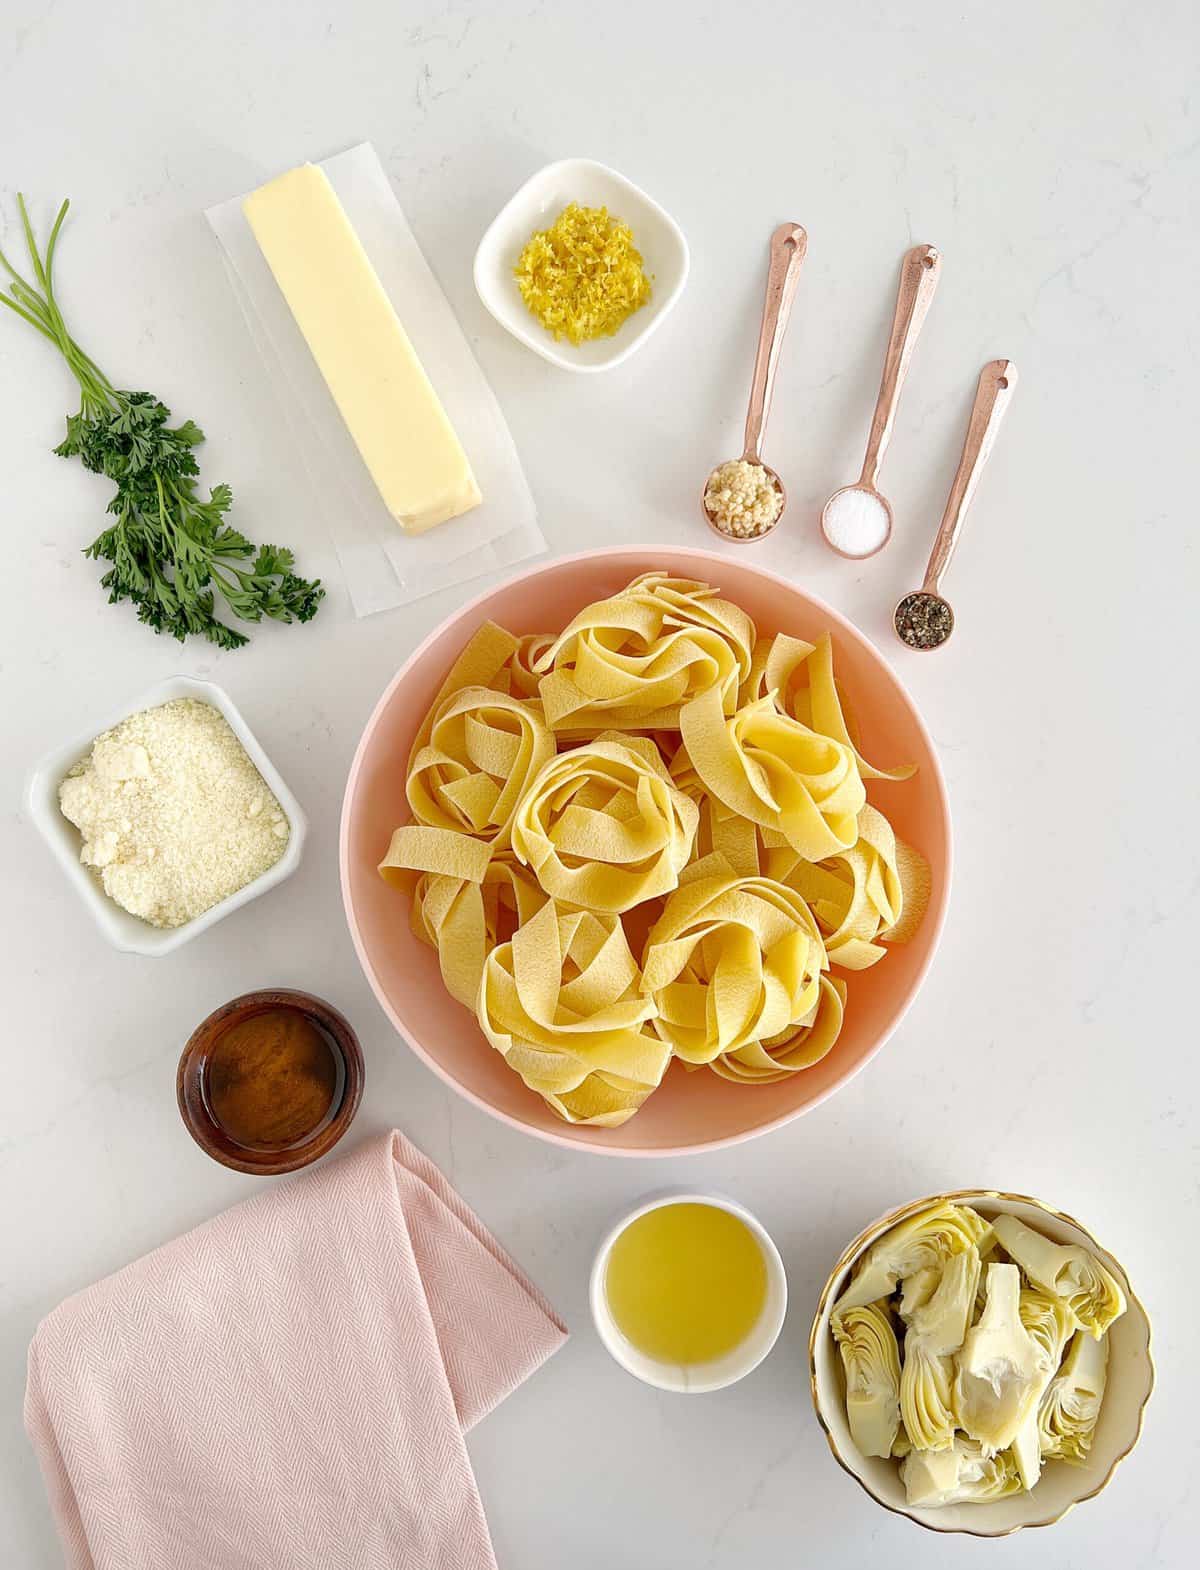 ingredients to make lemon artichoke pasta 